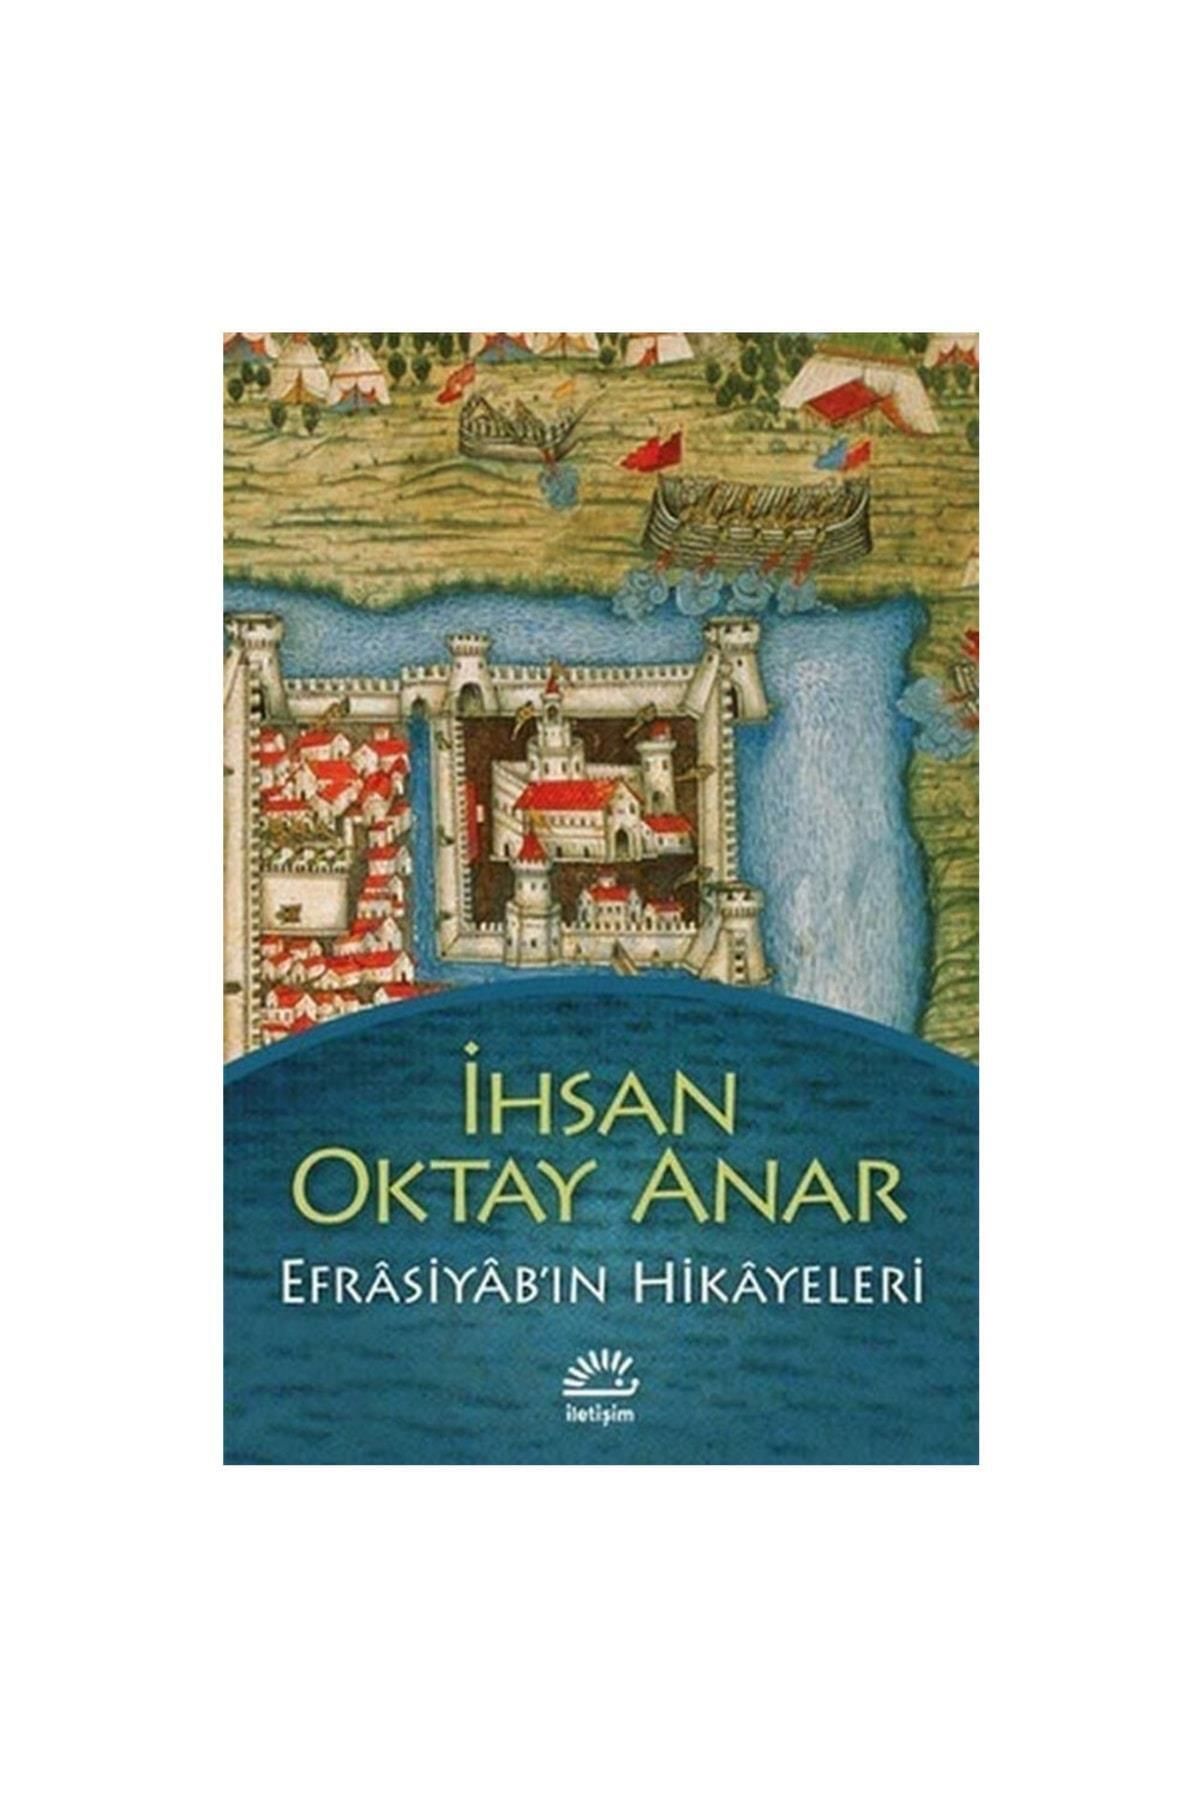 İletişim Yayınları Efrasiyabın Hikayeleri - Ihsan Oktay Anar - Iletişim Yayıncılık